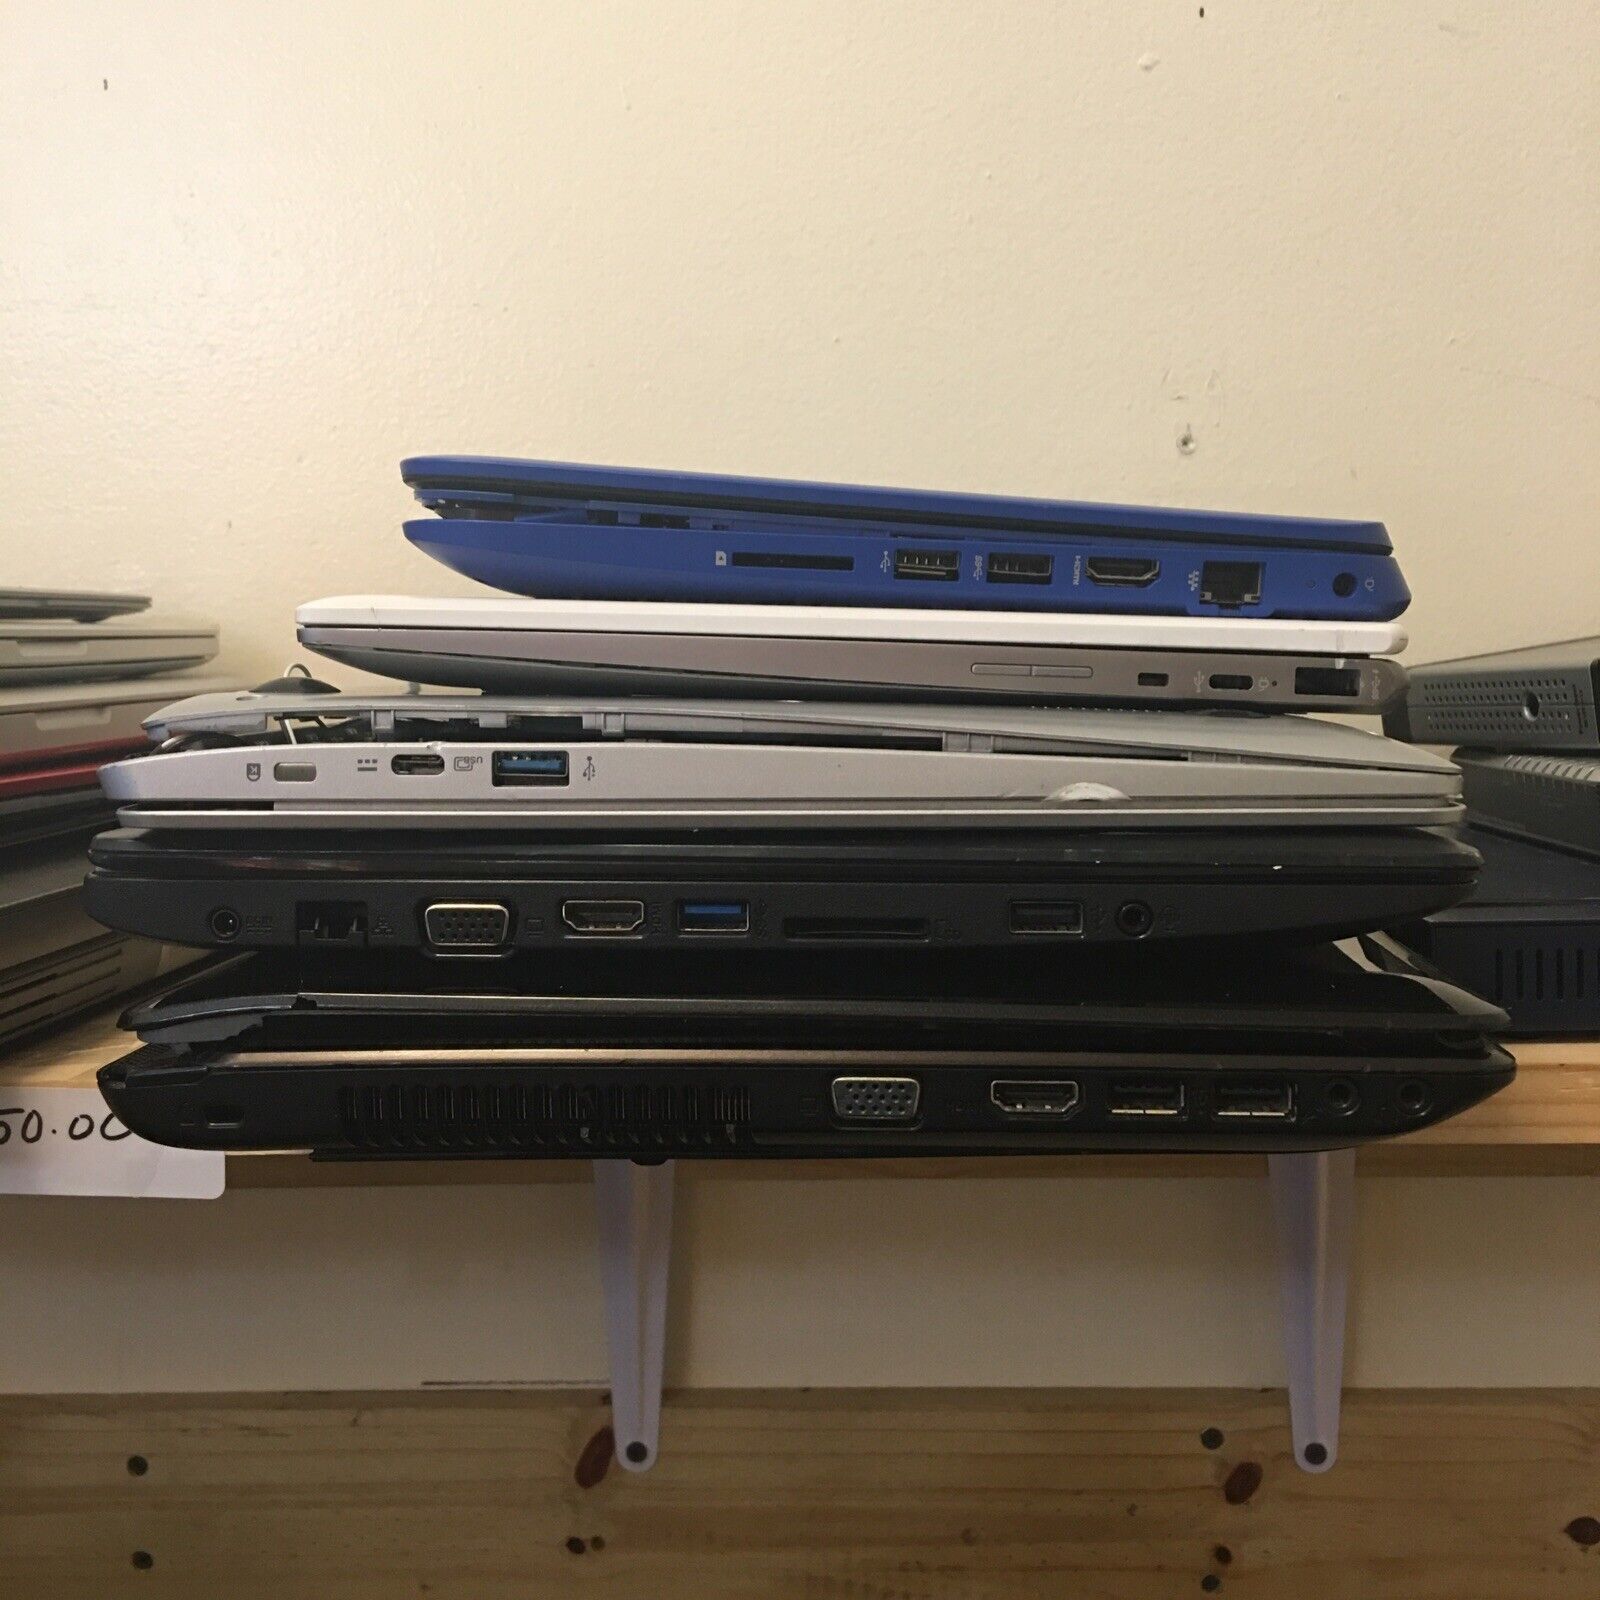 Lot of 5 laptops for repair